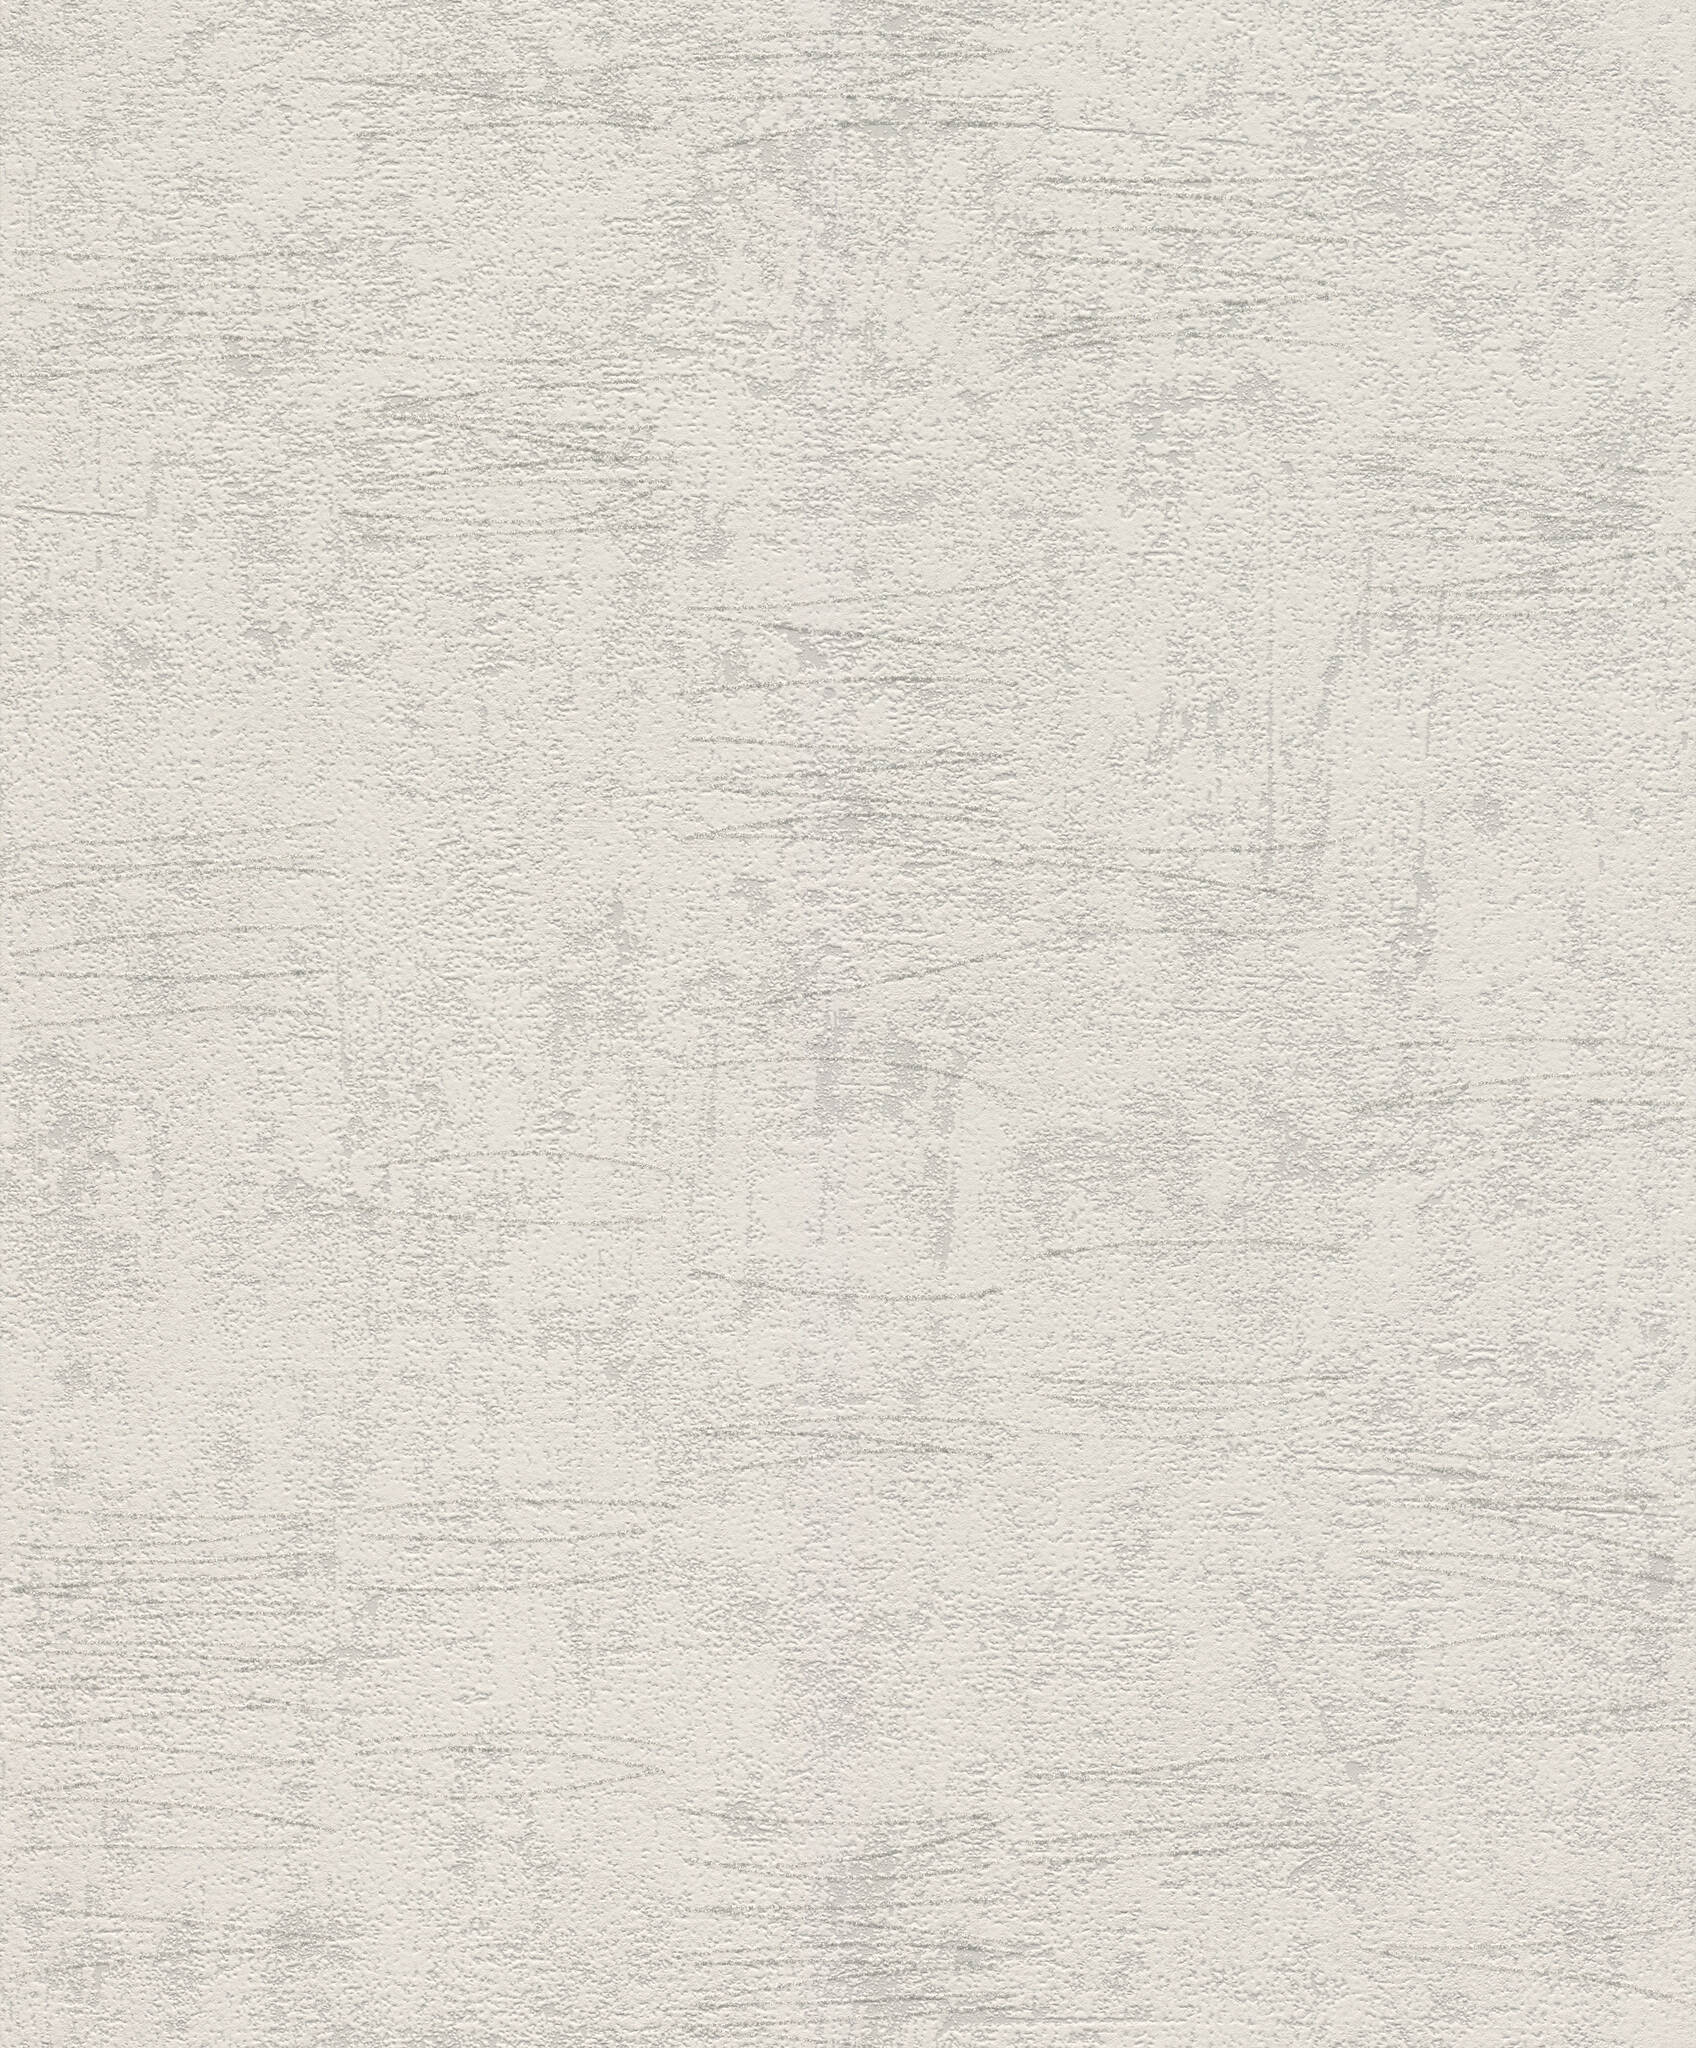 Vliestapete in Grau mit feinen Linien in Silber, Andy Wand 649932